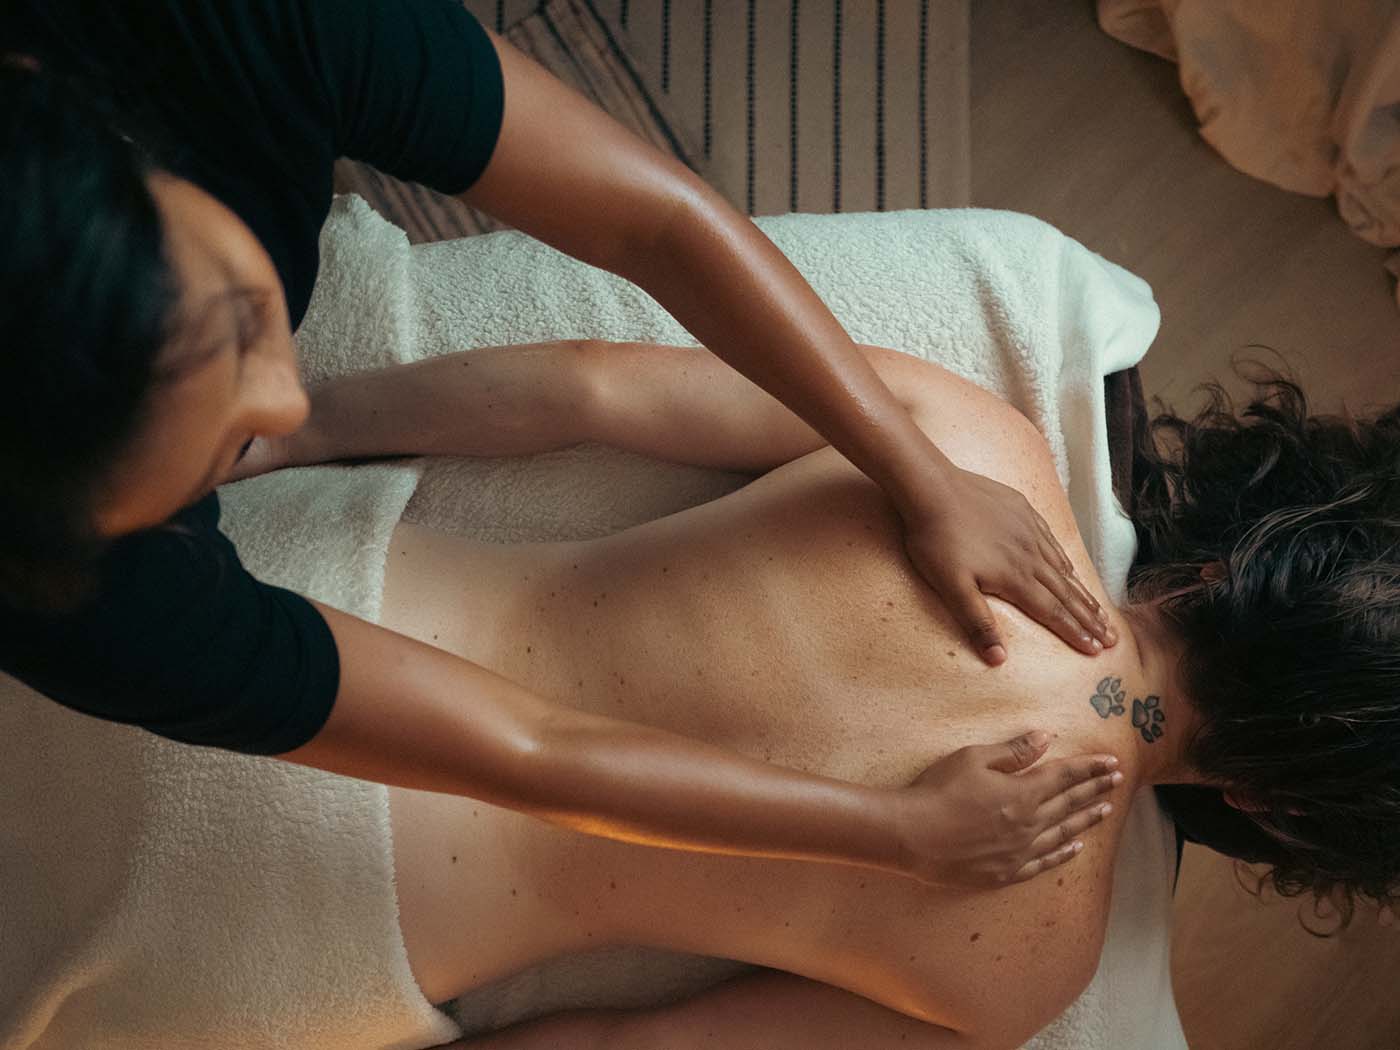 La masseuse masse les omoplates de la cliente